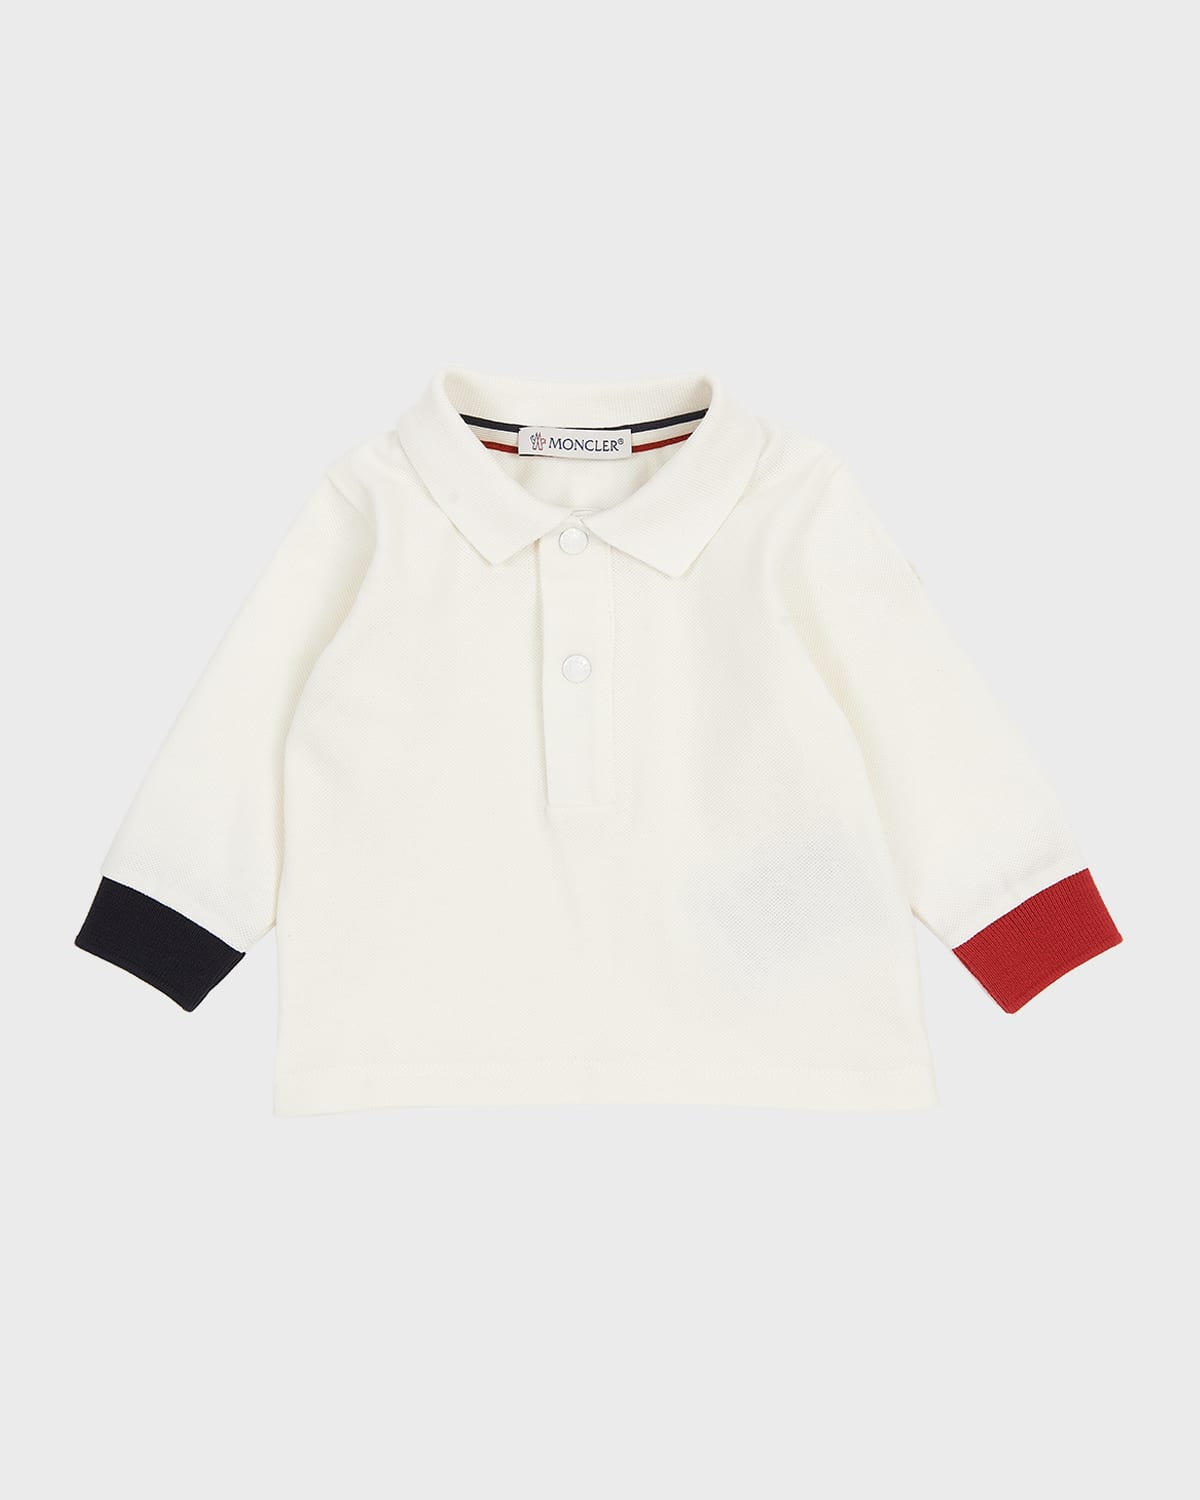 Moncler Kids' Boy's Tri-stripe Polo Shirt In 034 White